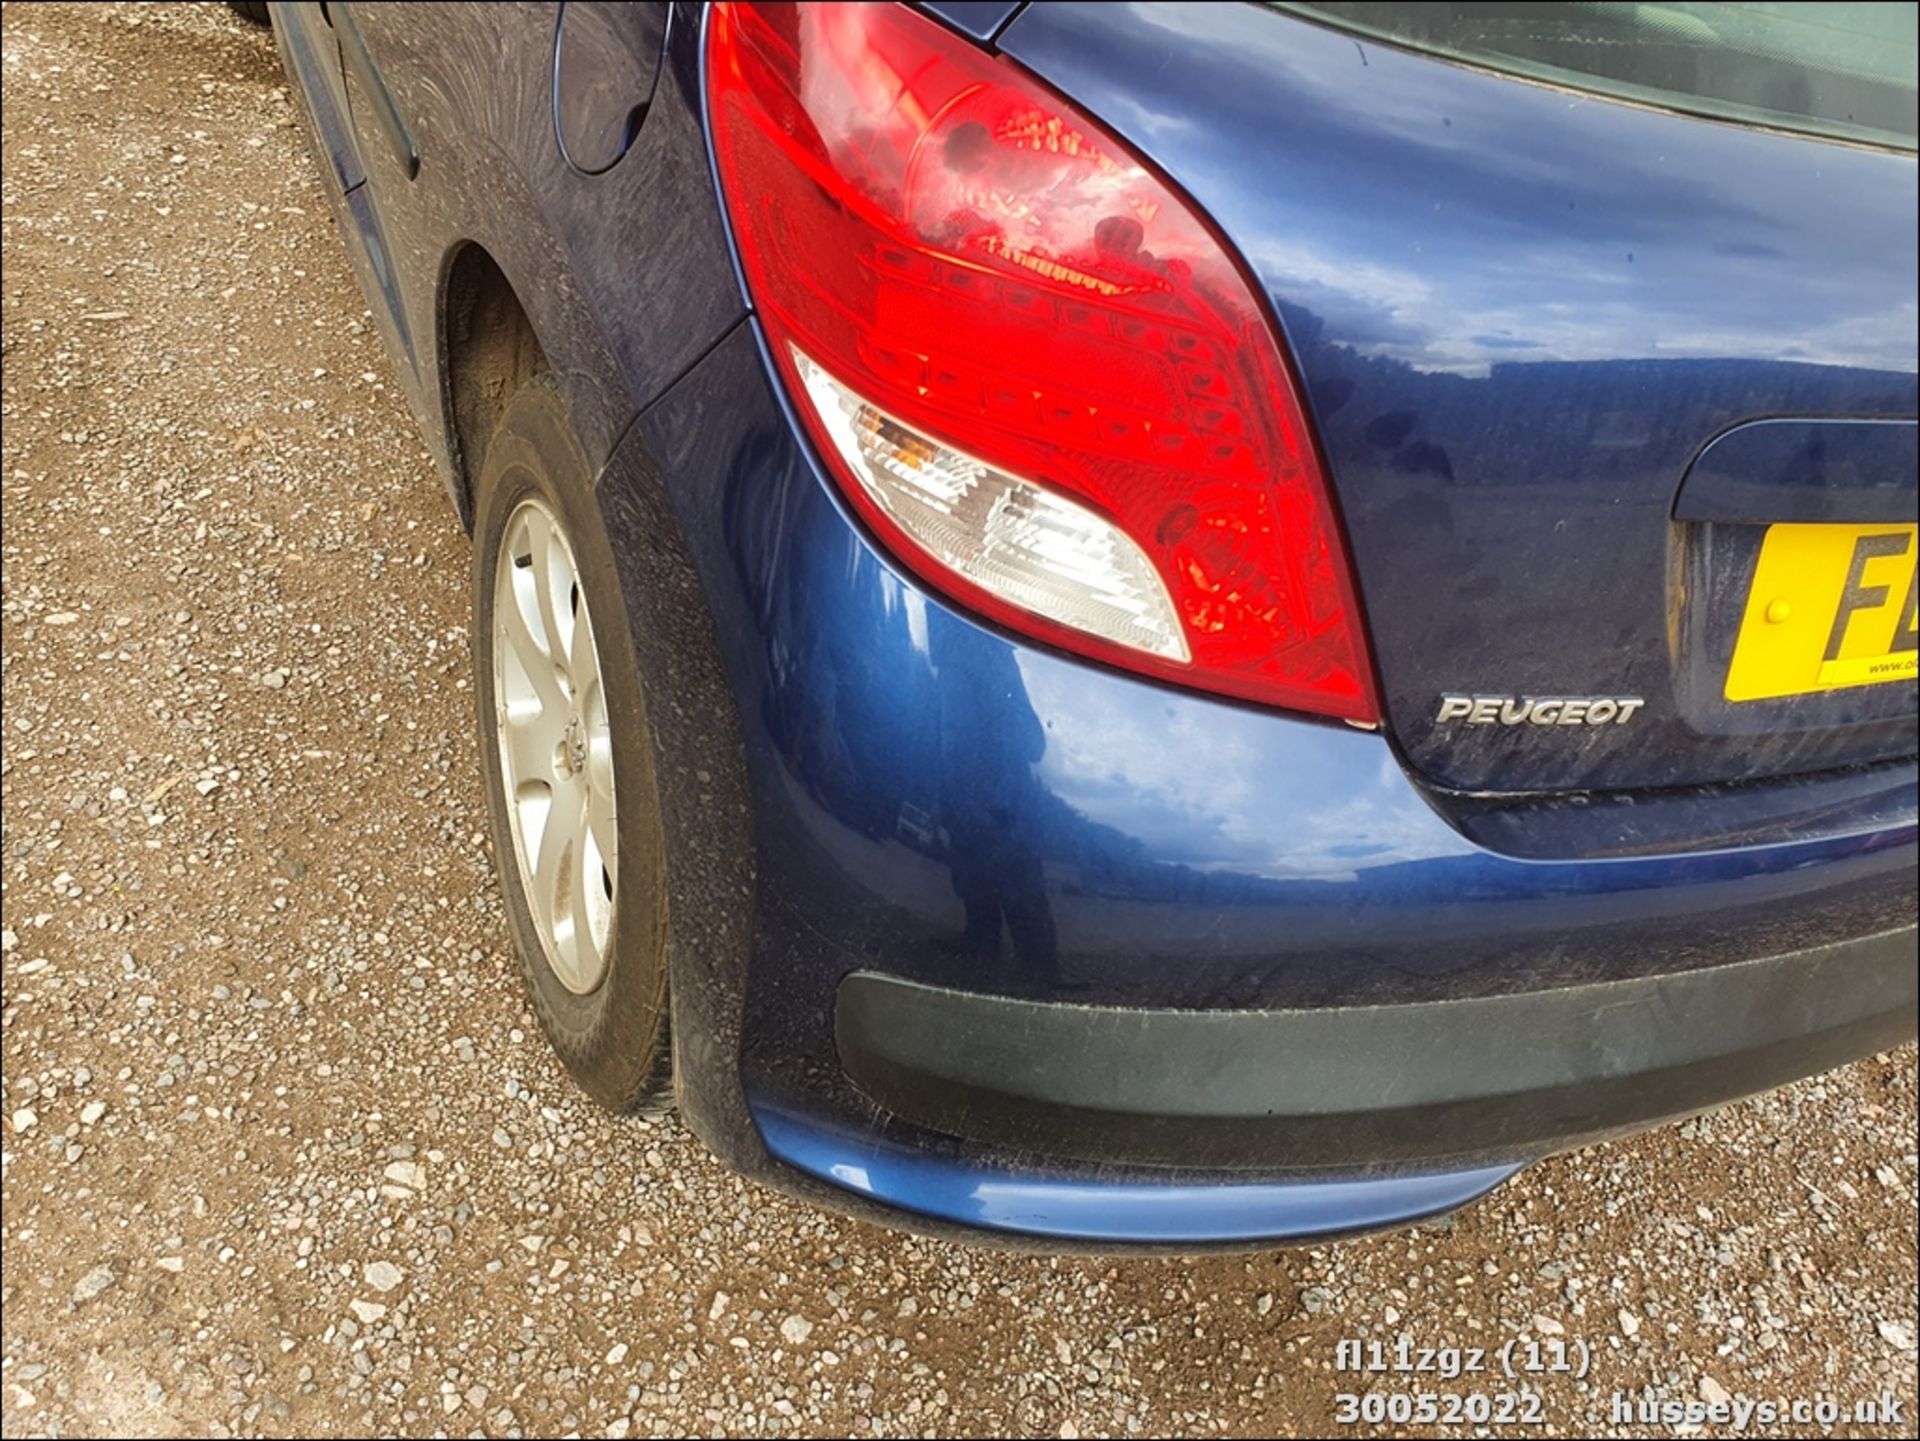 11/11 PEUGEOT 207 S HDI - 1398cc 3dr Hatchback (Blue, 128k) - Image 11 of 26